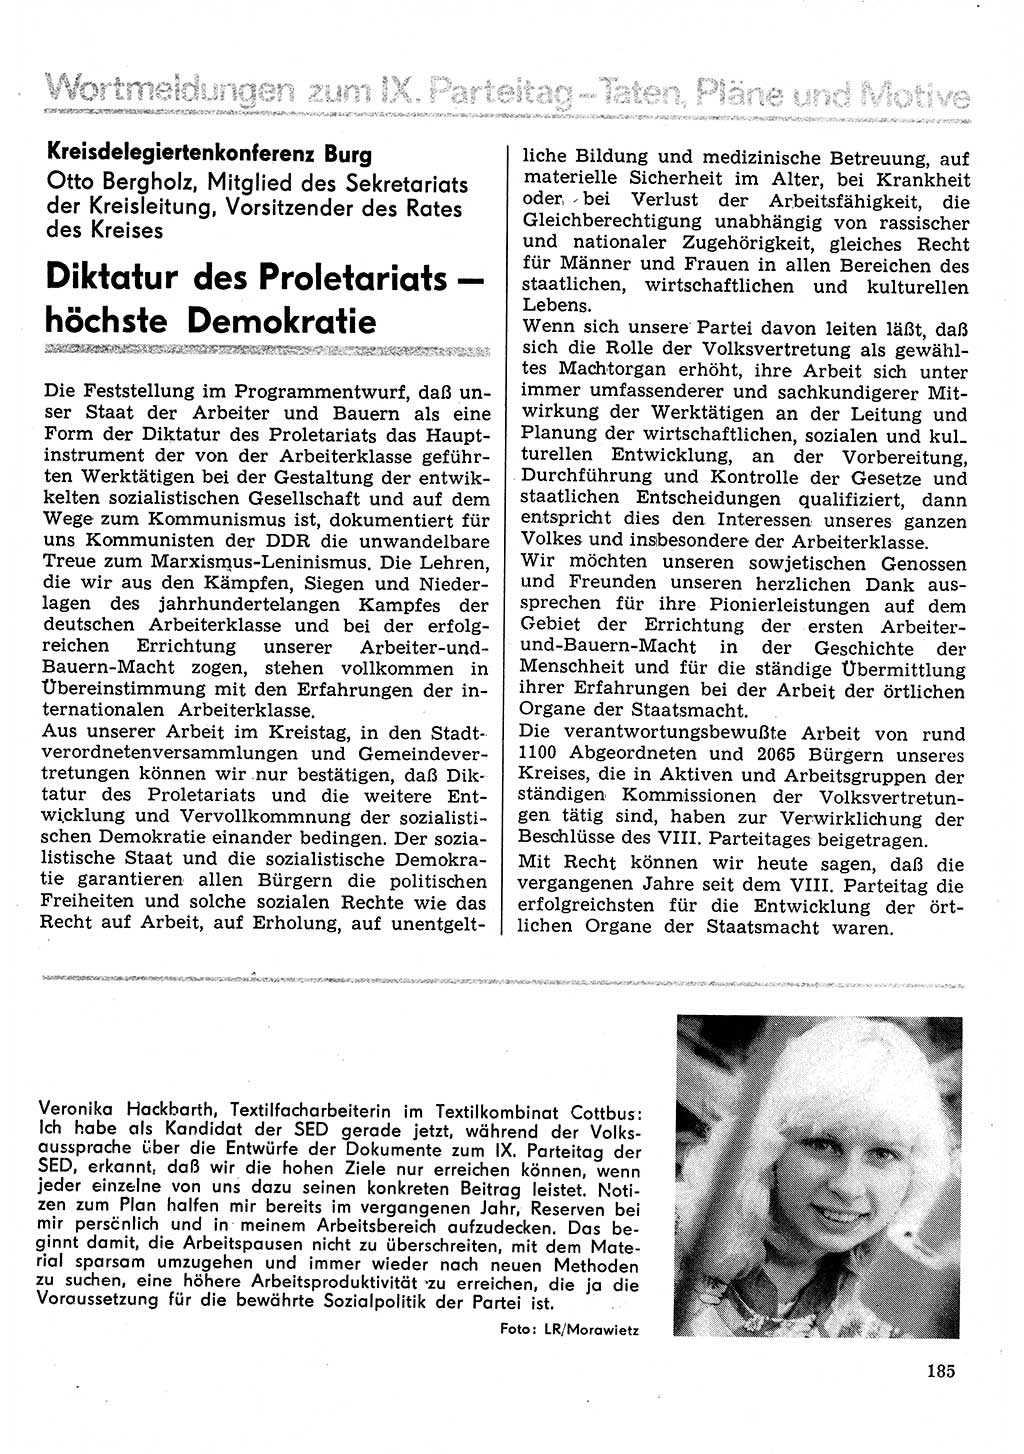 Neuer Weg (NW), Organ des Zentralkomitees (ZK) der SED (Sozialistische Einheitspartei Deutschlands) für Fragen des Parteilebens, 31. Jahrgang [Deutsche Demokratische Republik (DDR)] 1976, Seite 185 (NW ZK SED DDR 1976, S. 185)